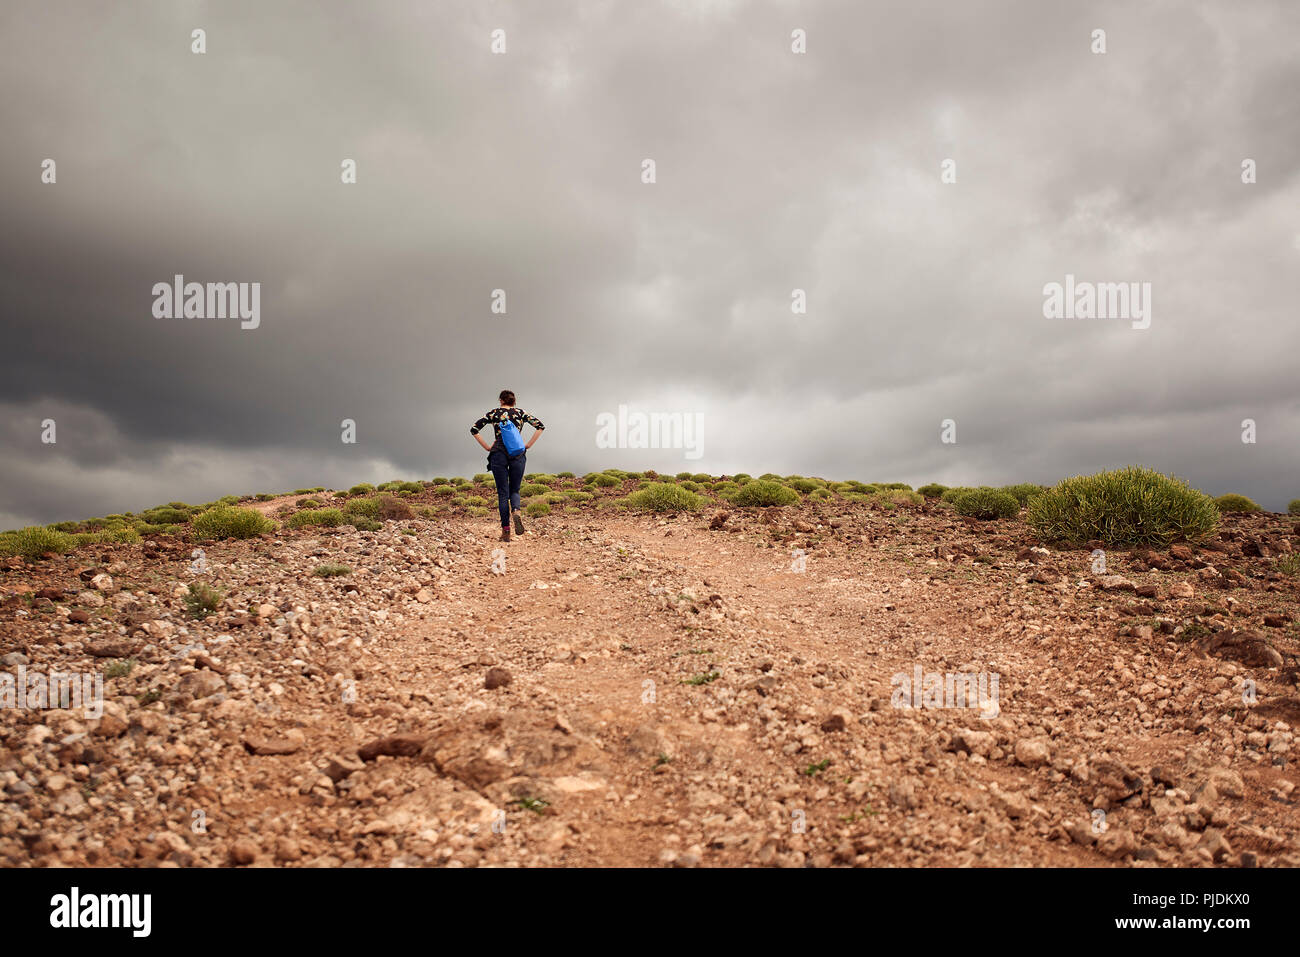 Mujer caminata cuesta arriba en pista de tierra, vista trasera, Las Palmas, Gran Canaria, Islas Canarias, España Foto de stock